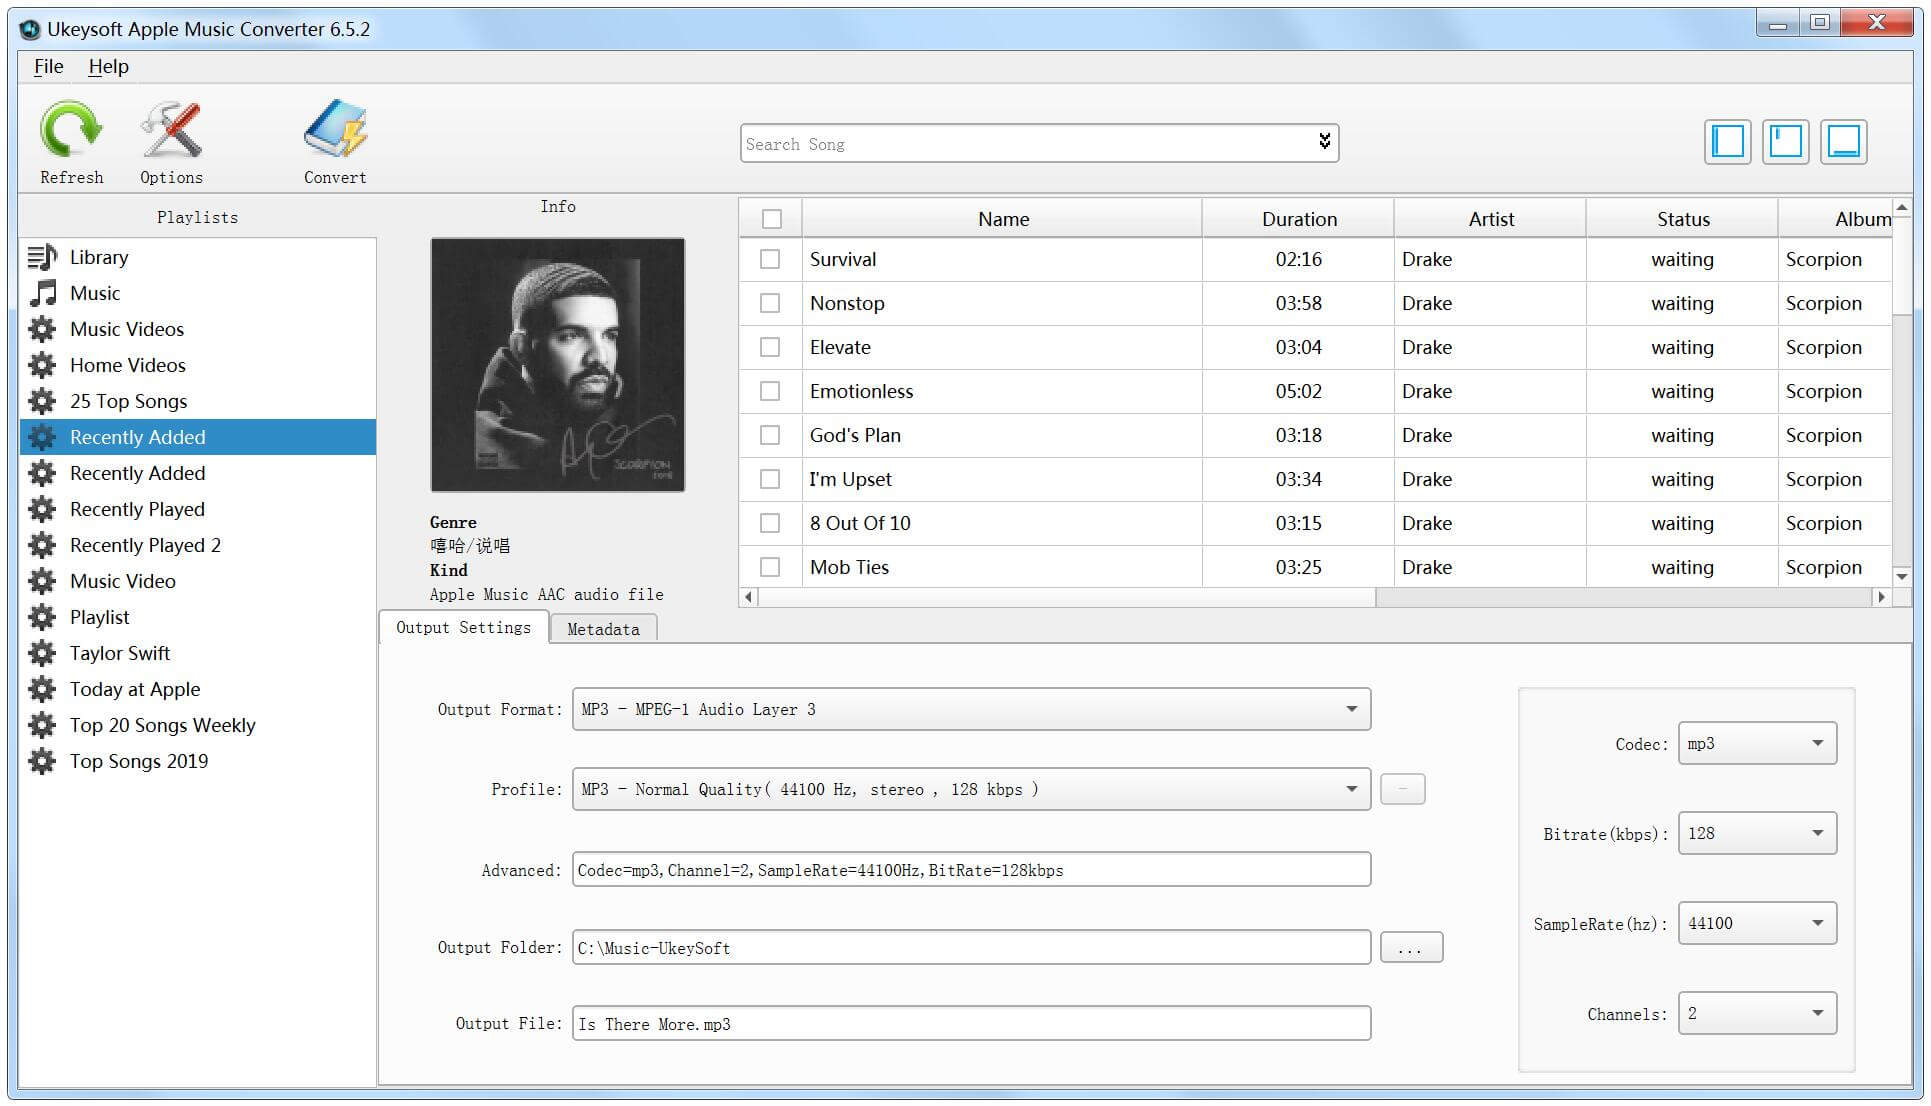 啟動UkeySoft Apple Music 轉檔器並登錄Apple ID